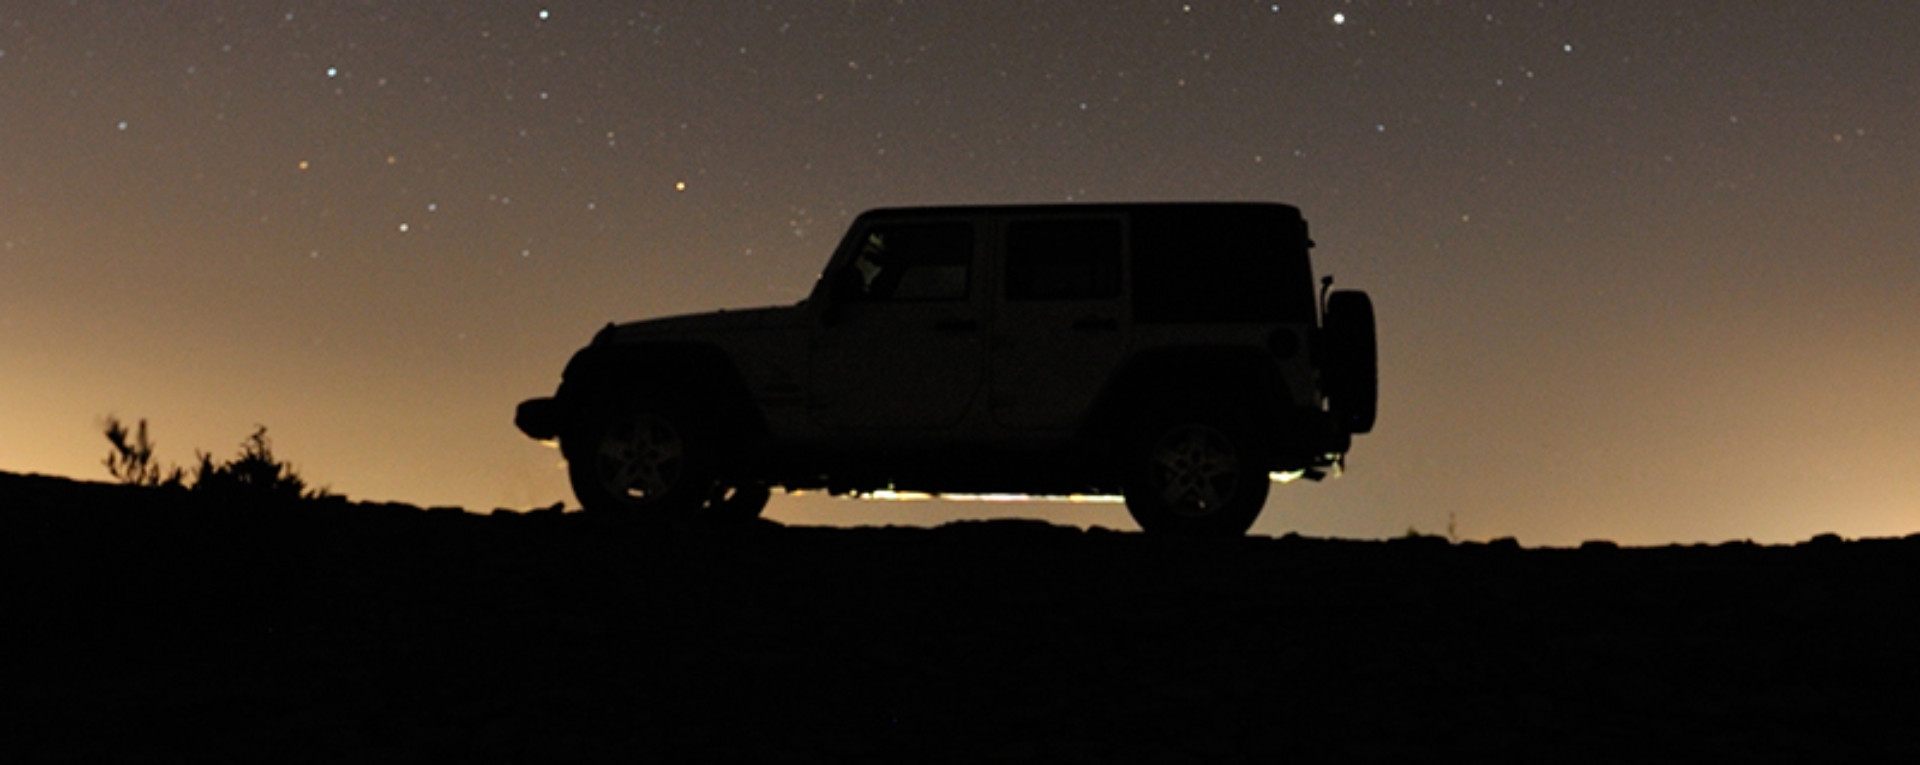 oman jeep stars